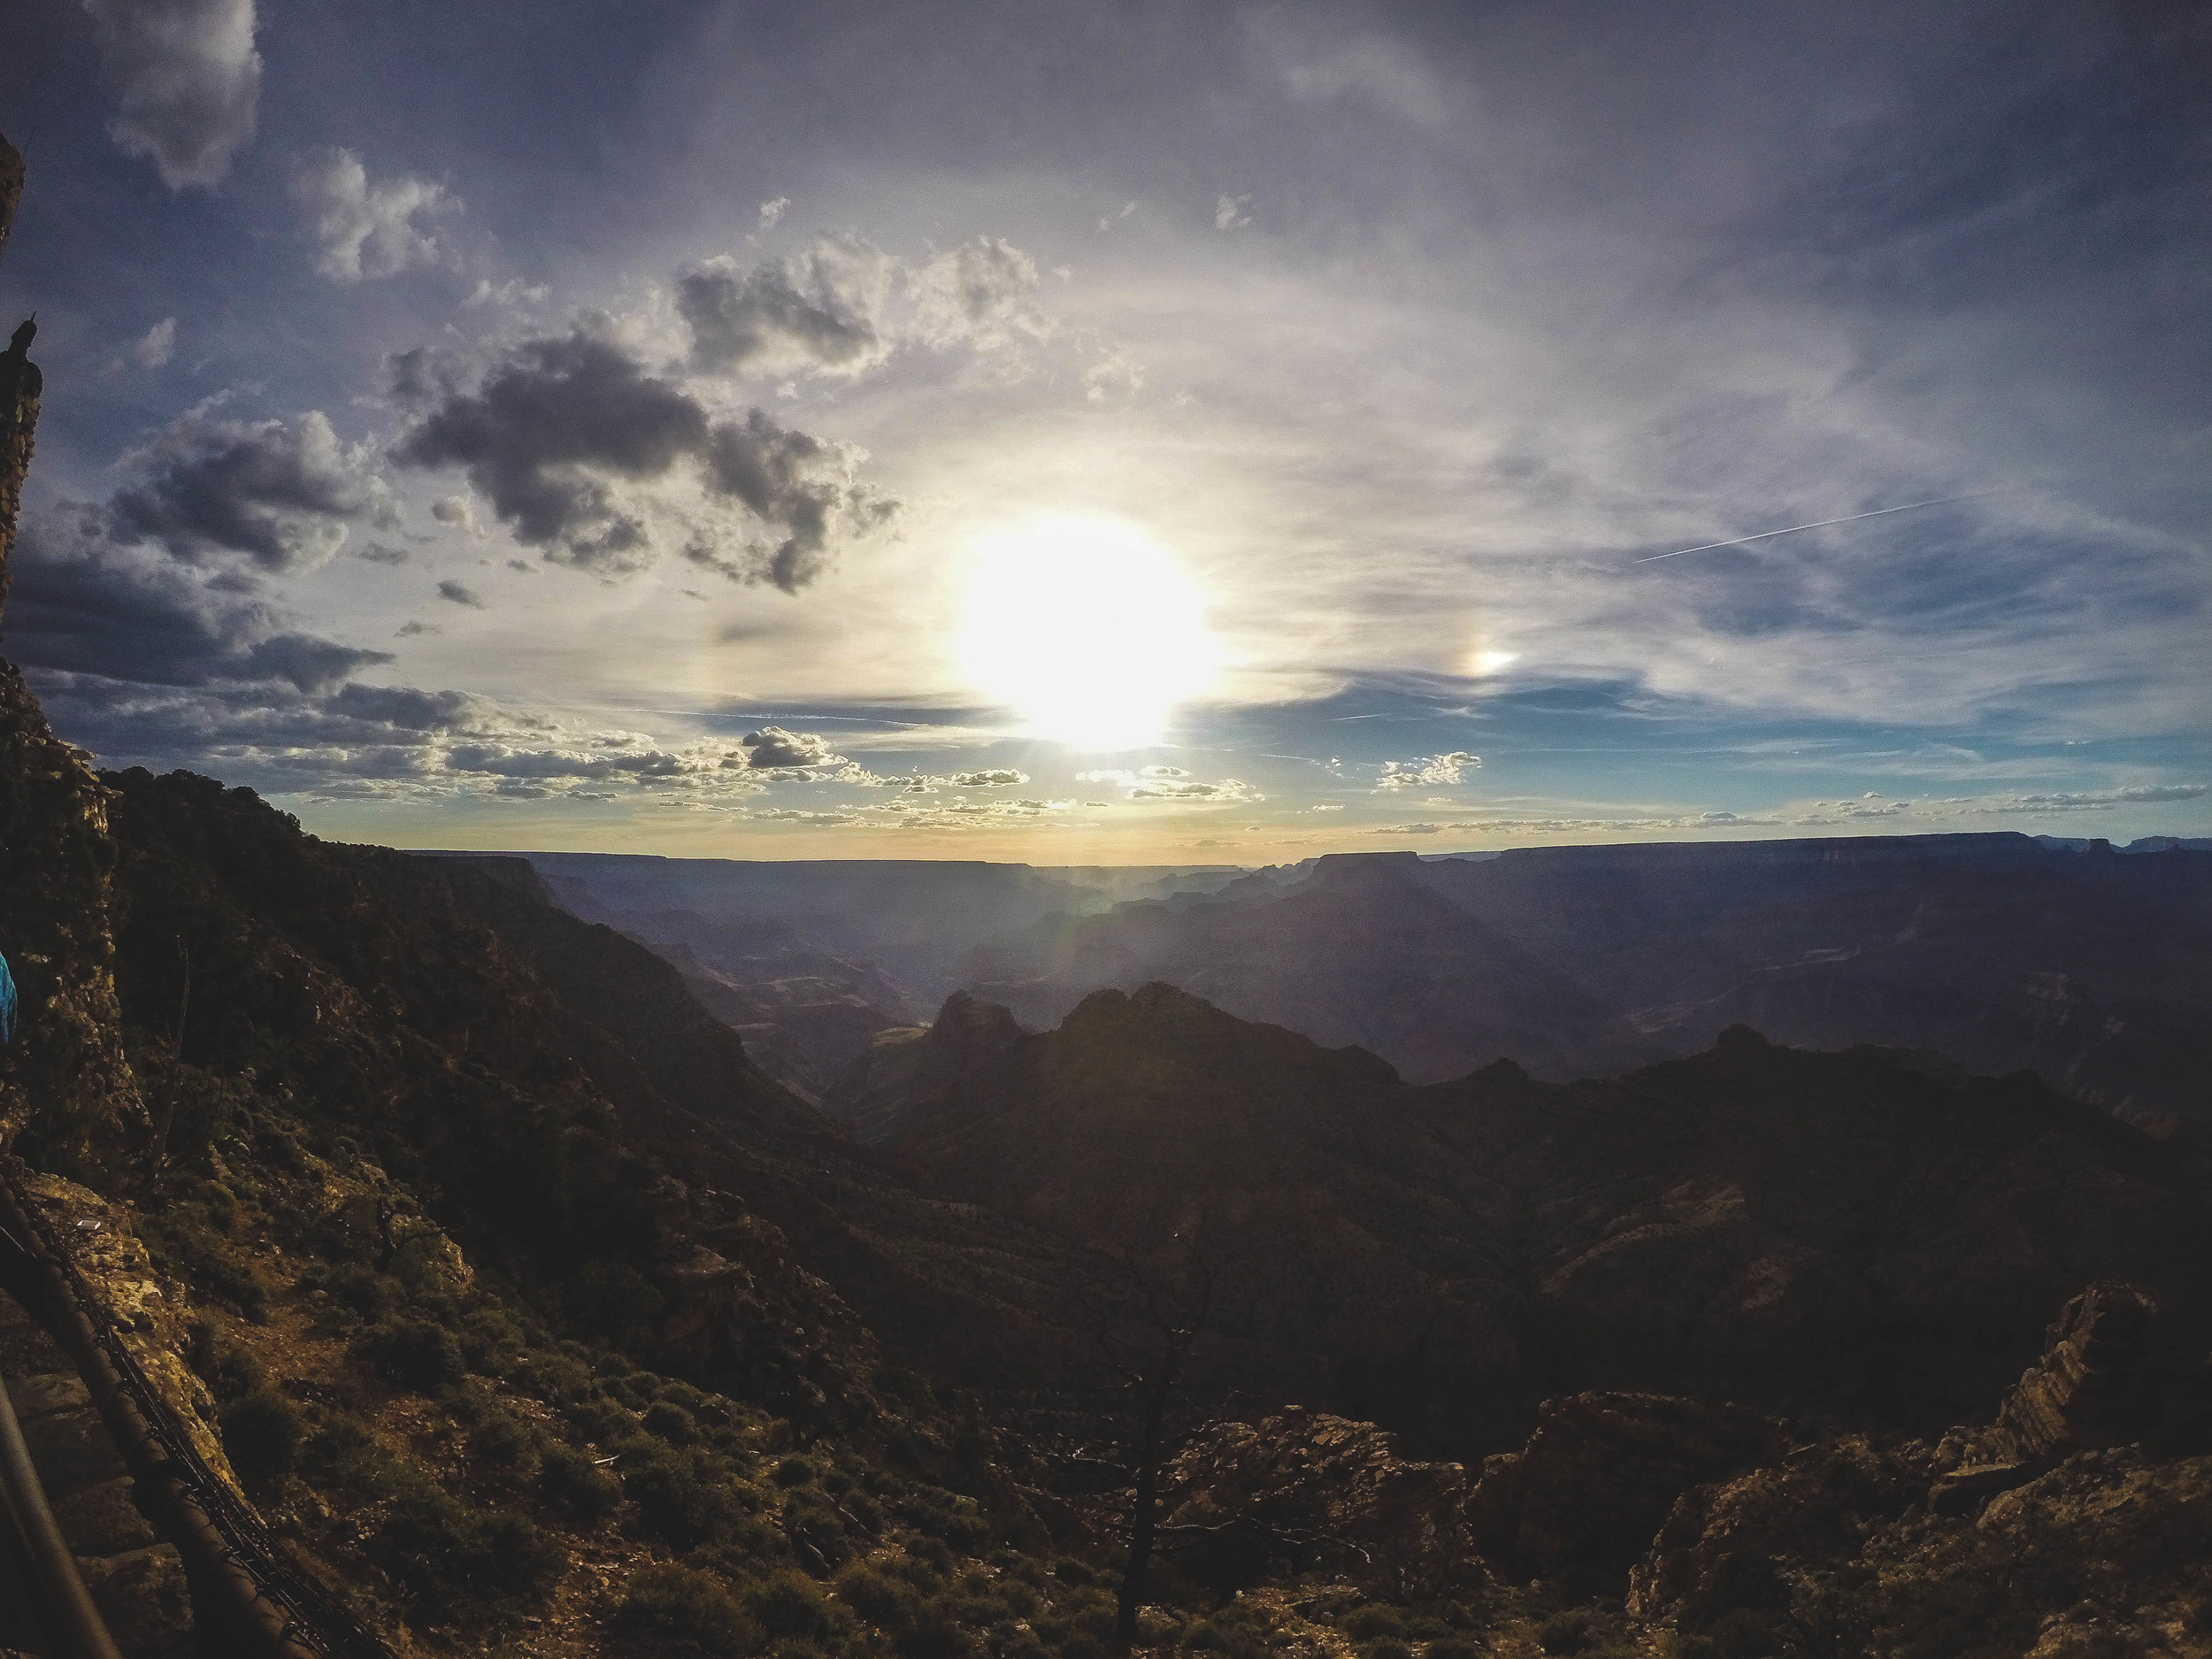   desert view&nbsp;  | Grand Canyon, AZ  